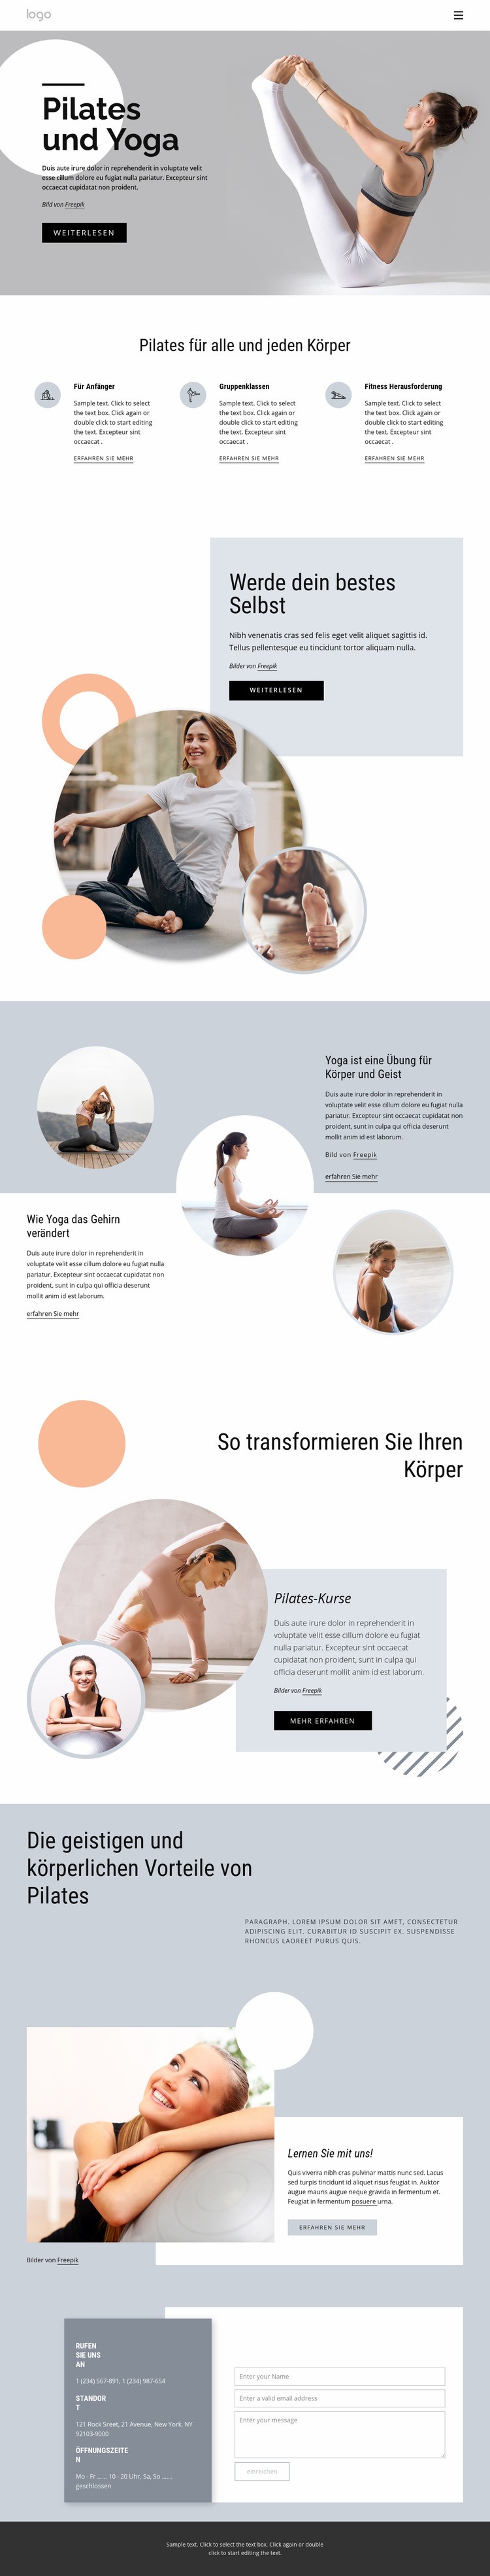 Pilates und Yoga Zentrum Website-Modell